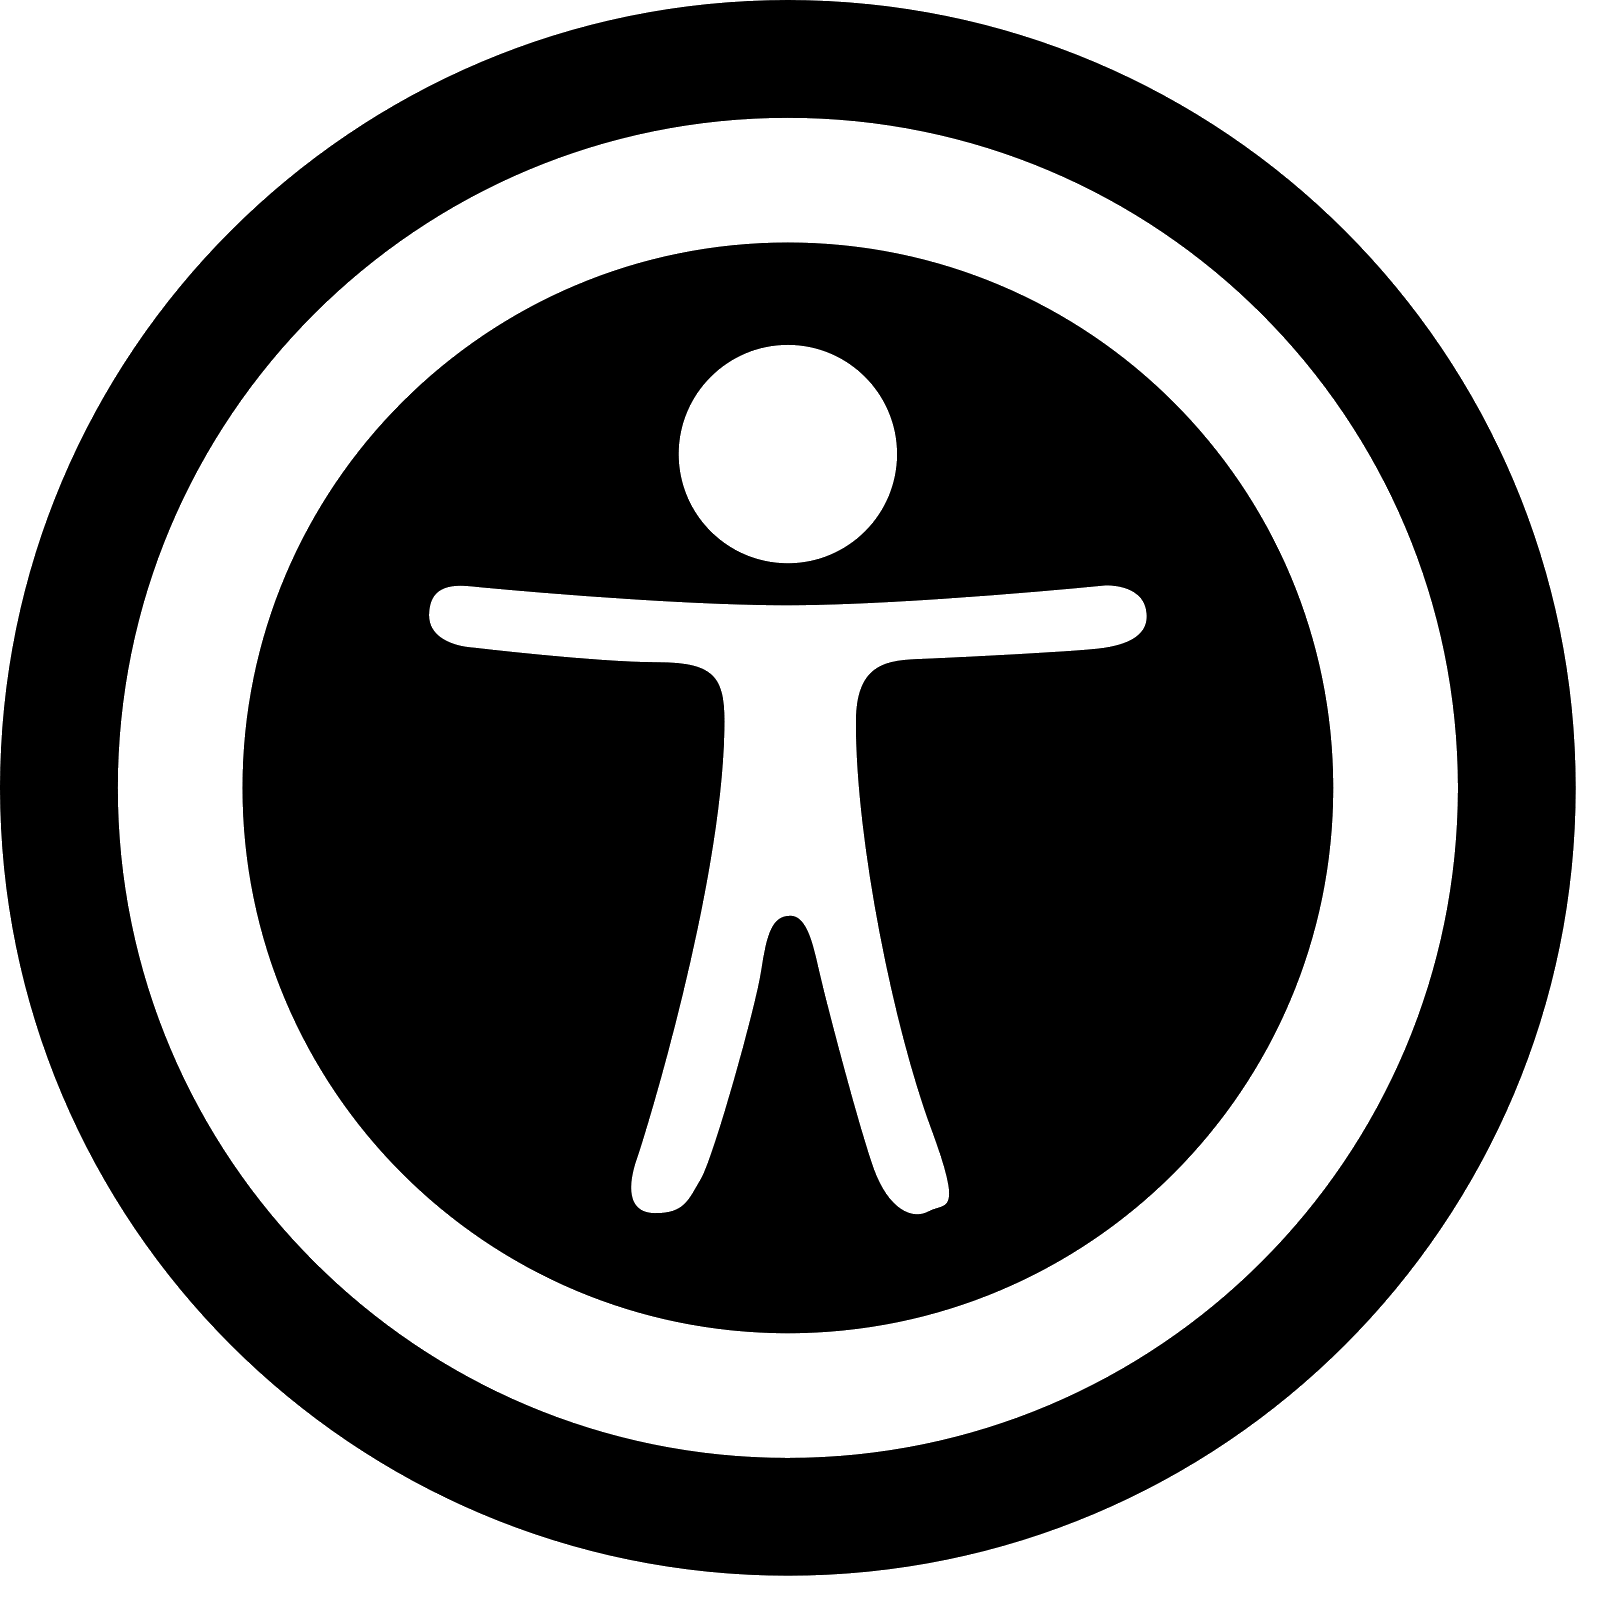 Accessibility Logo - Accessibility logo png 4 PNG Image